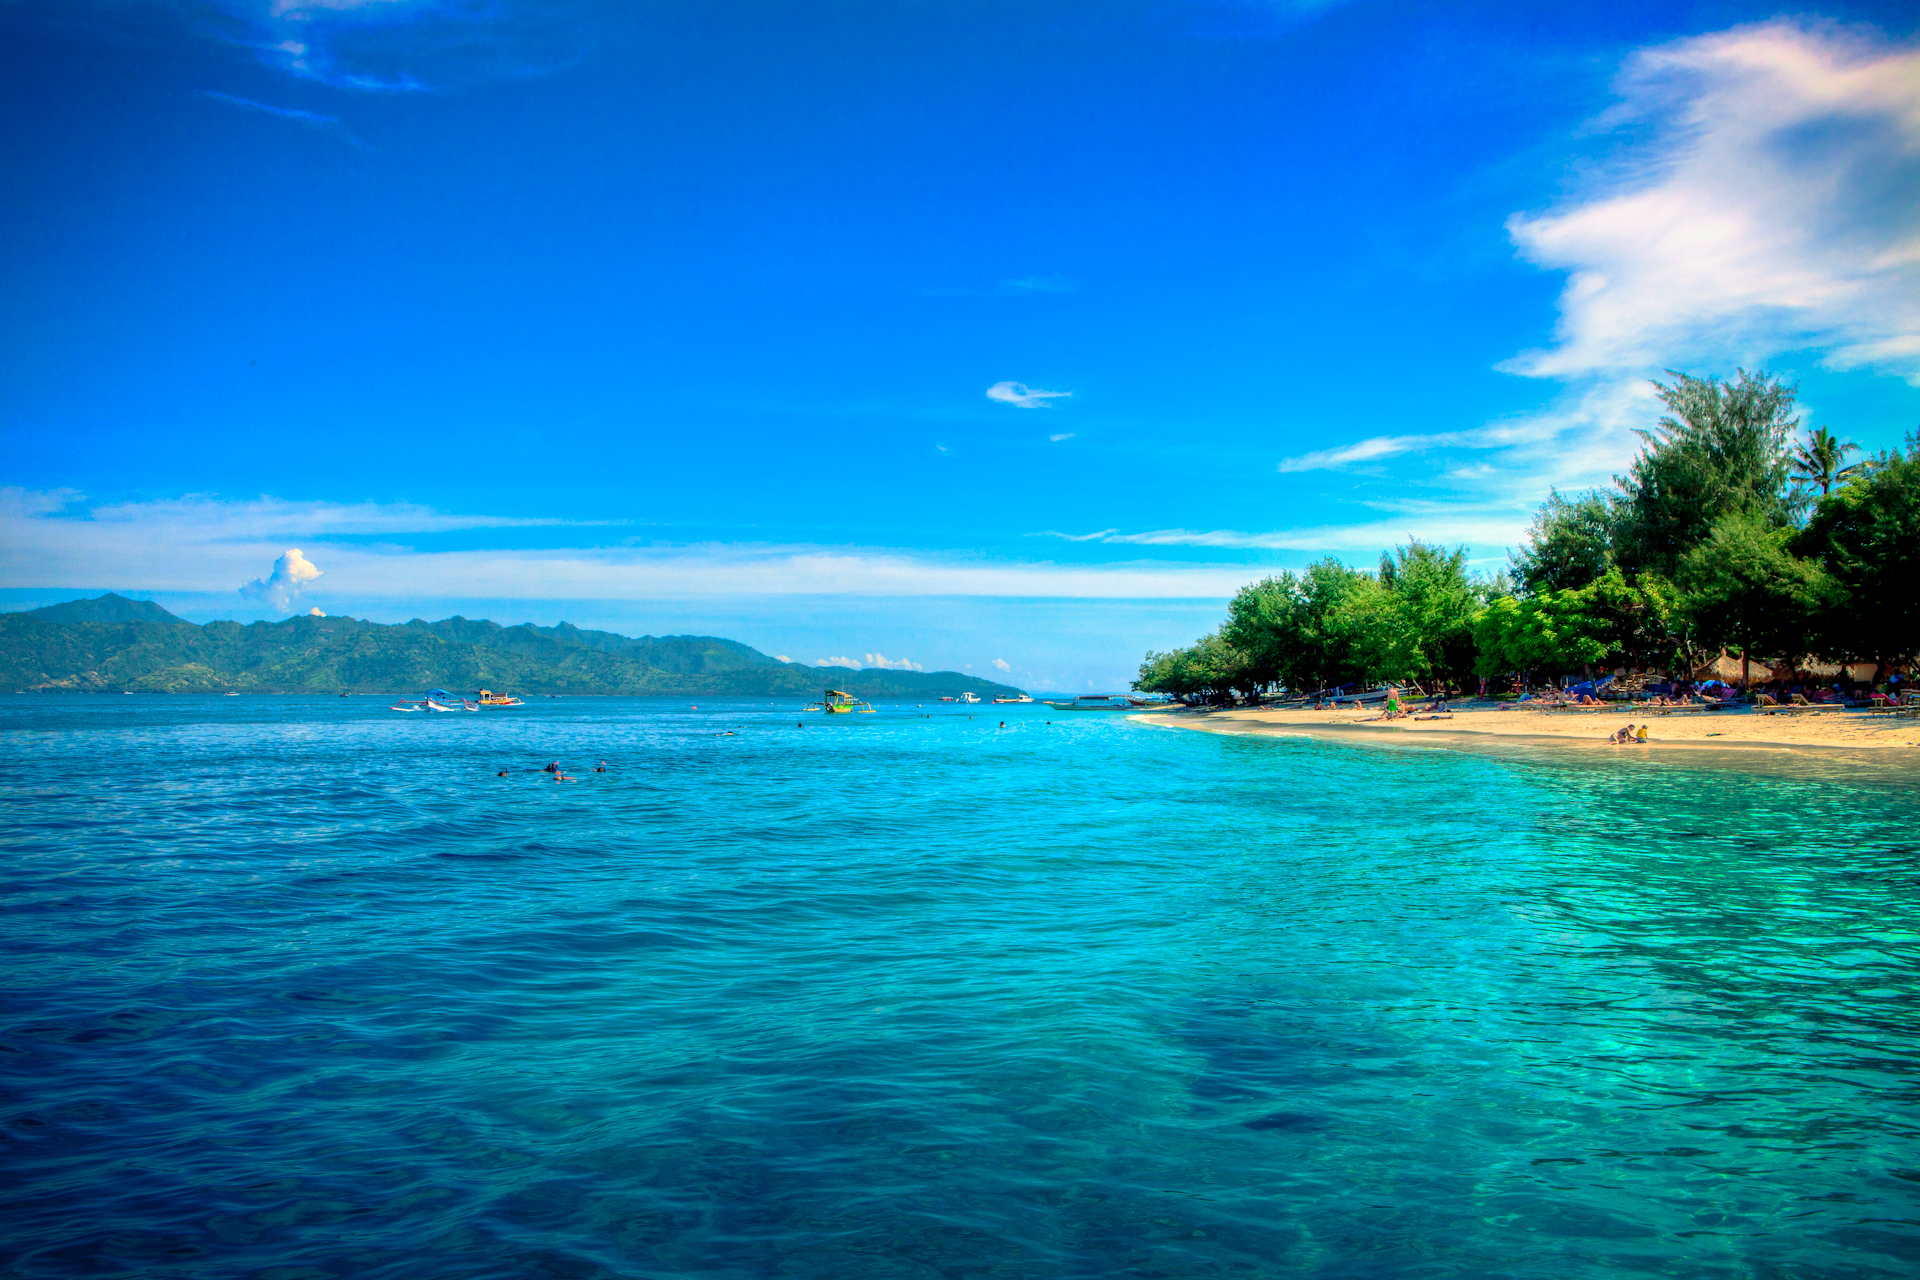 Wisata Pantai Senggigi Di Tanah Lombok, Pecahan Surga di